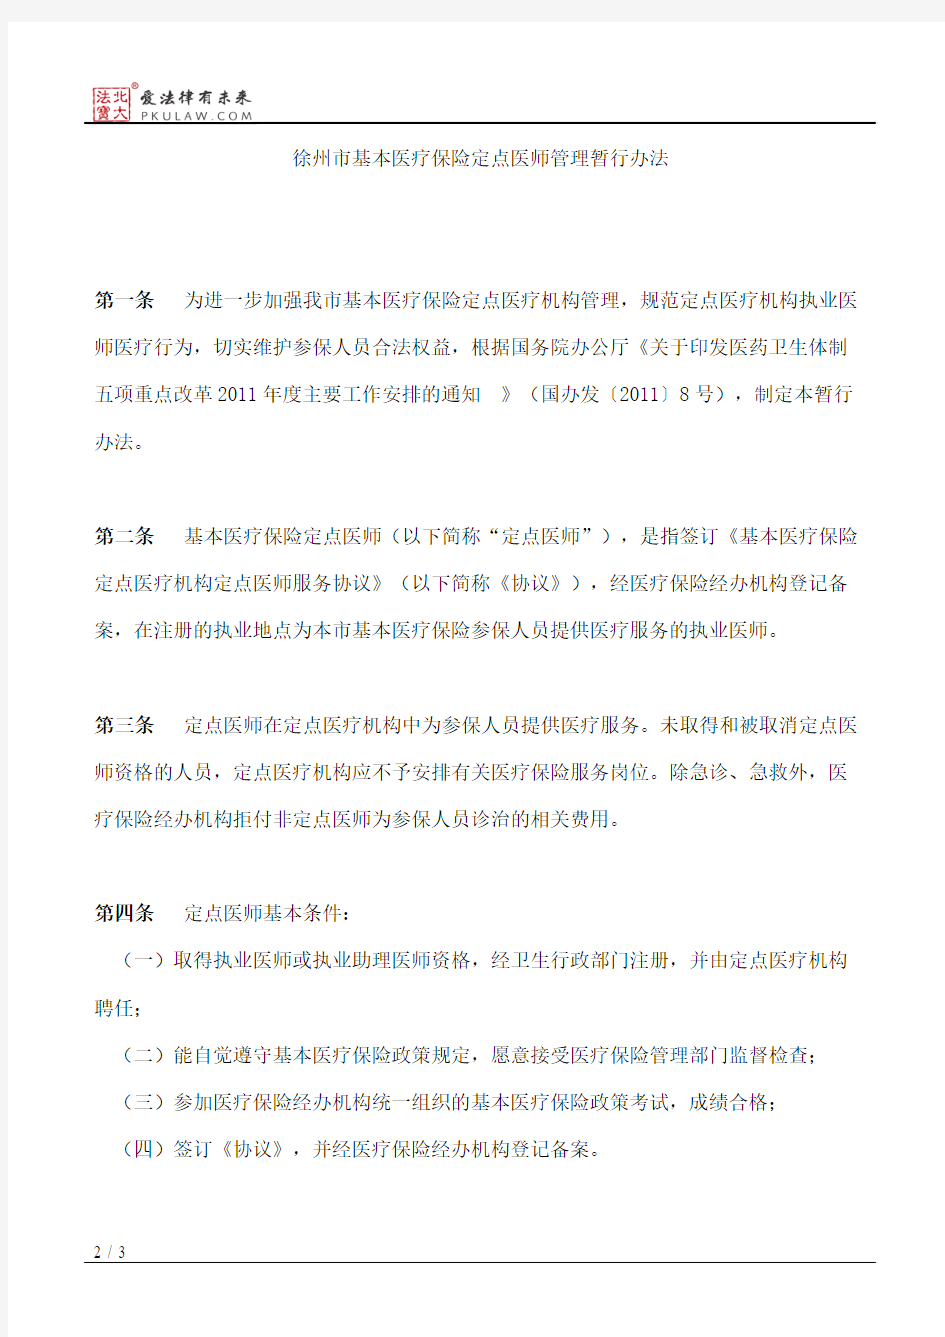 徐州市人力资源和社会保障局、徐州市卫生局关于印发《徐州市基本